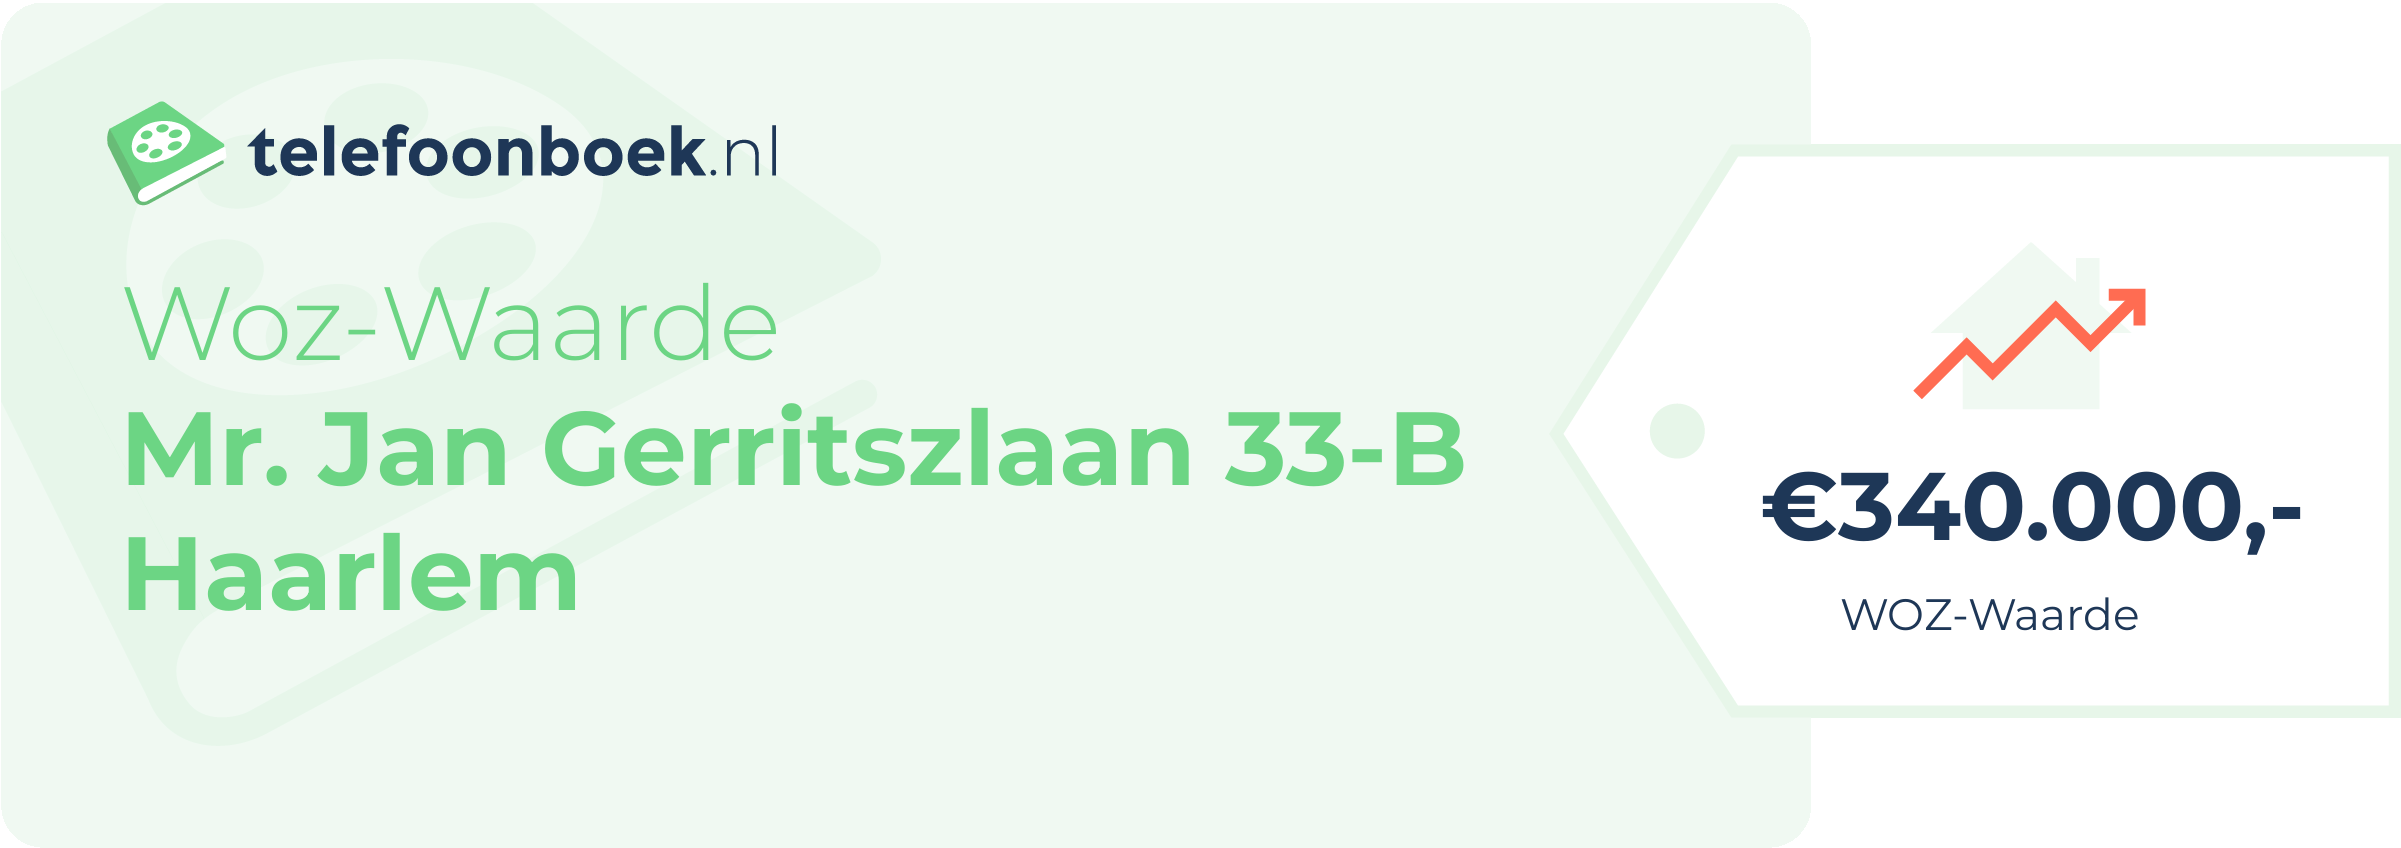 WOZ-waarde Mr. Jan Gerritszlaan 33-B Haarlem